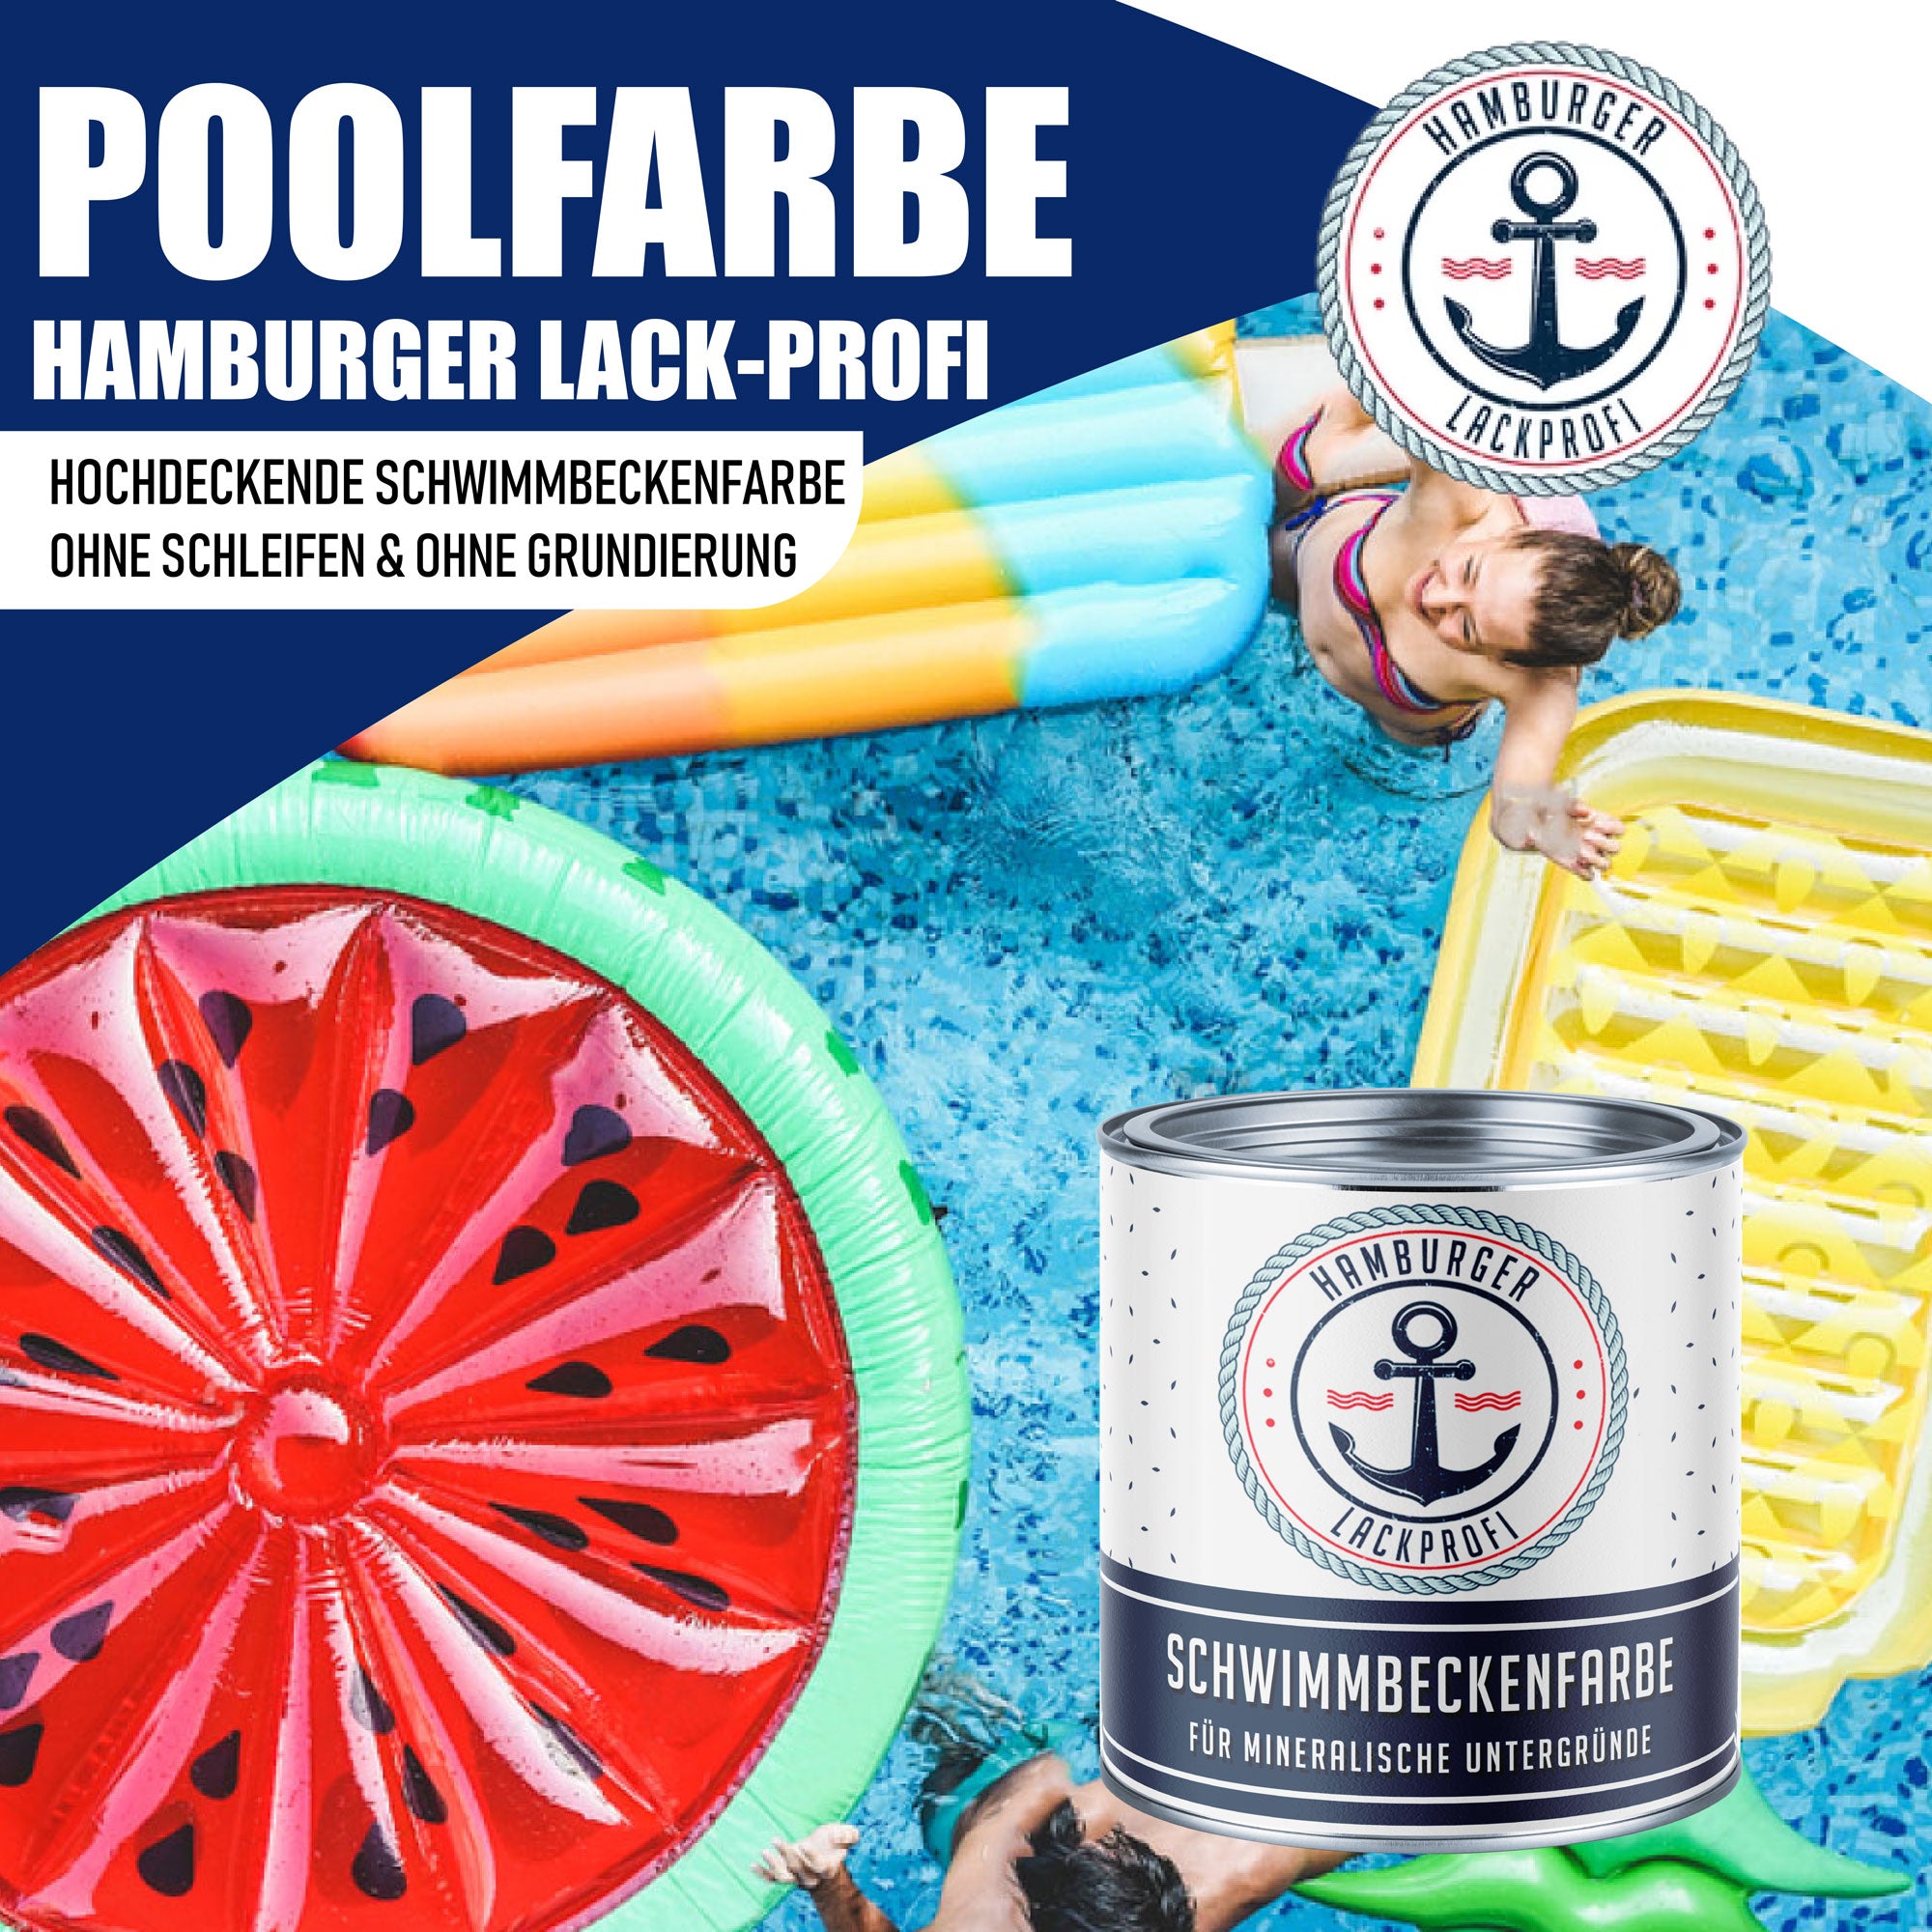 Hamburger Lack-Profi Schwimmbeckenfarbe Blaugrün RAL 6004 - hochdeckende Poolfarbe